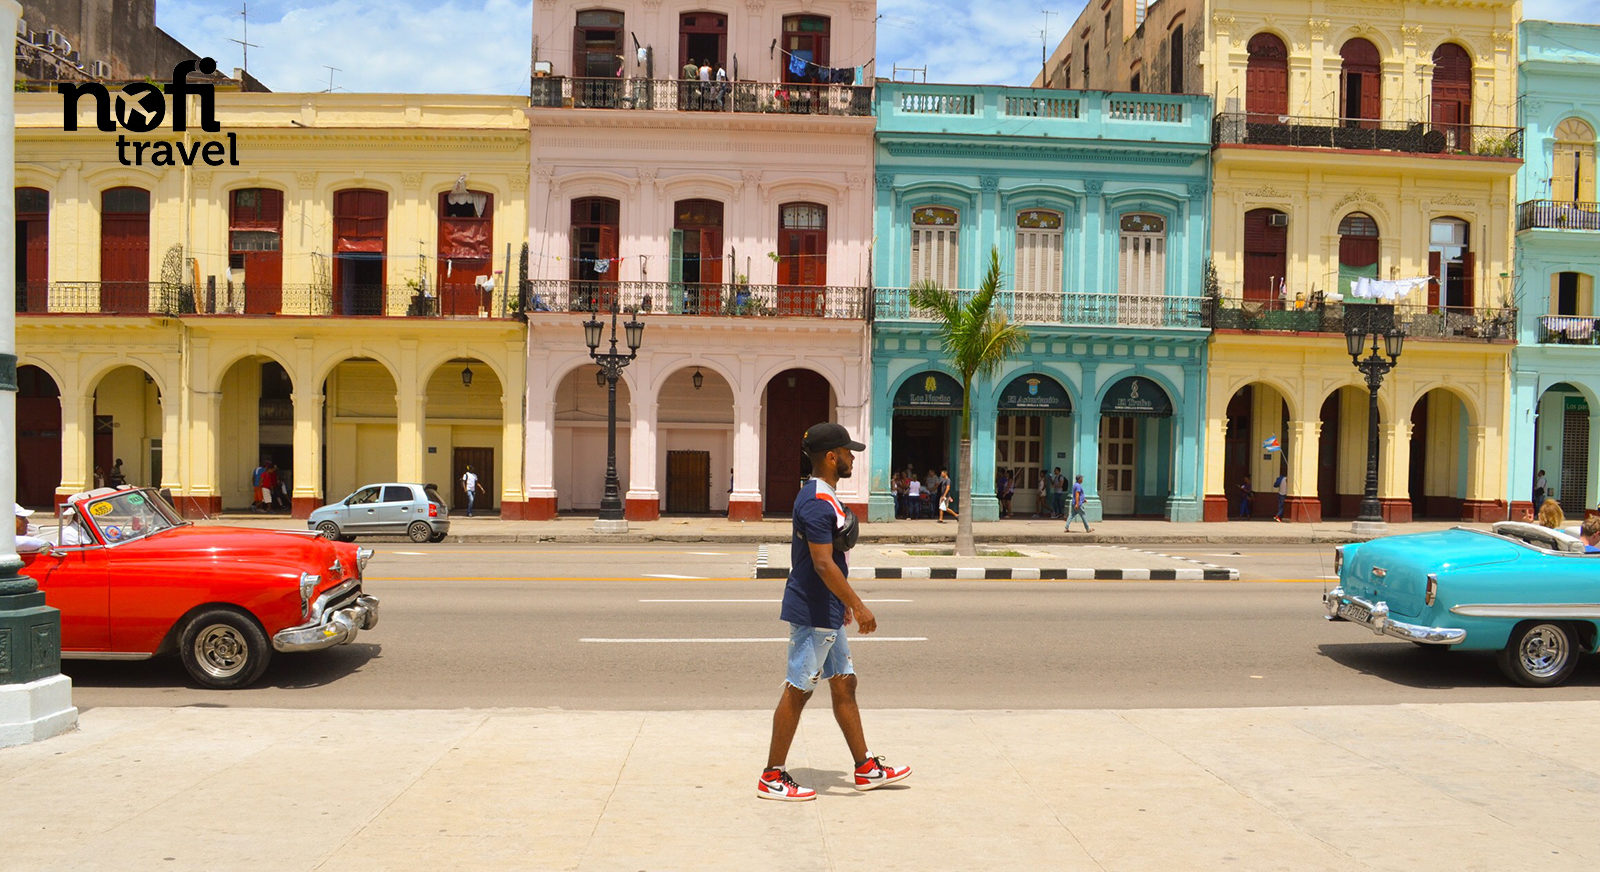 Nofi TRAVEL #4 [CUBA] étape 1: La Havane, la « ville aux Mille Colonnes »